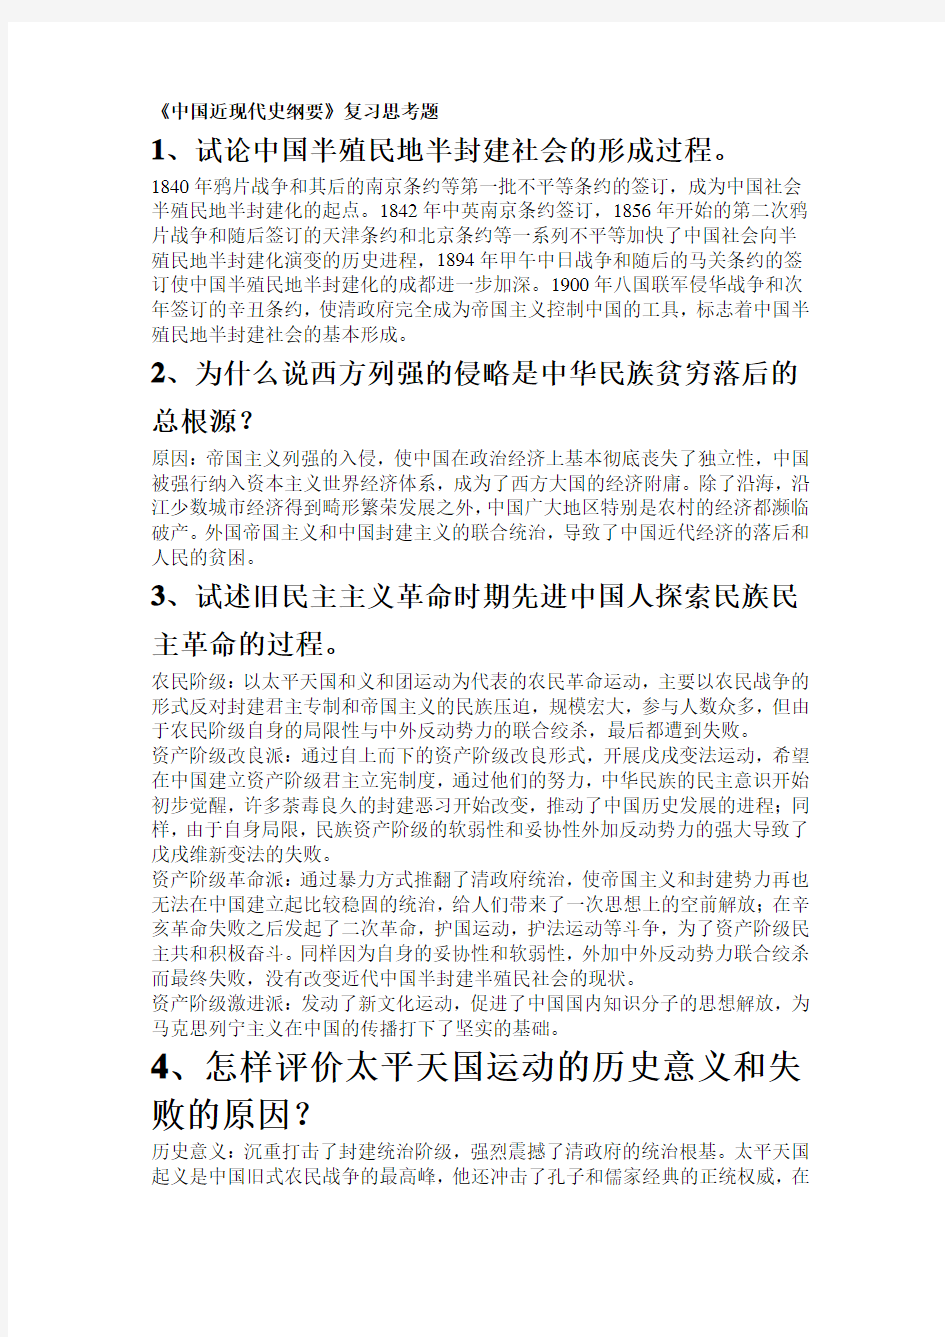 中国近现代史纲要25个大题答案